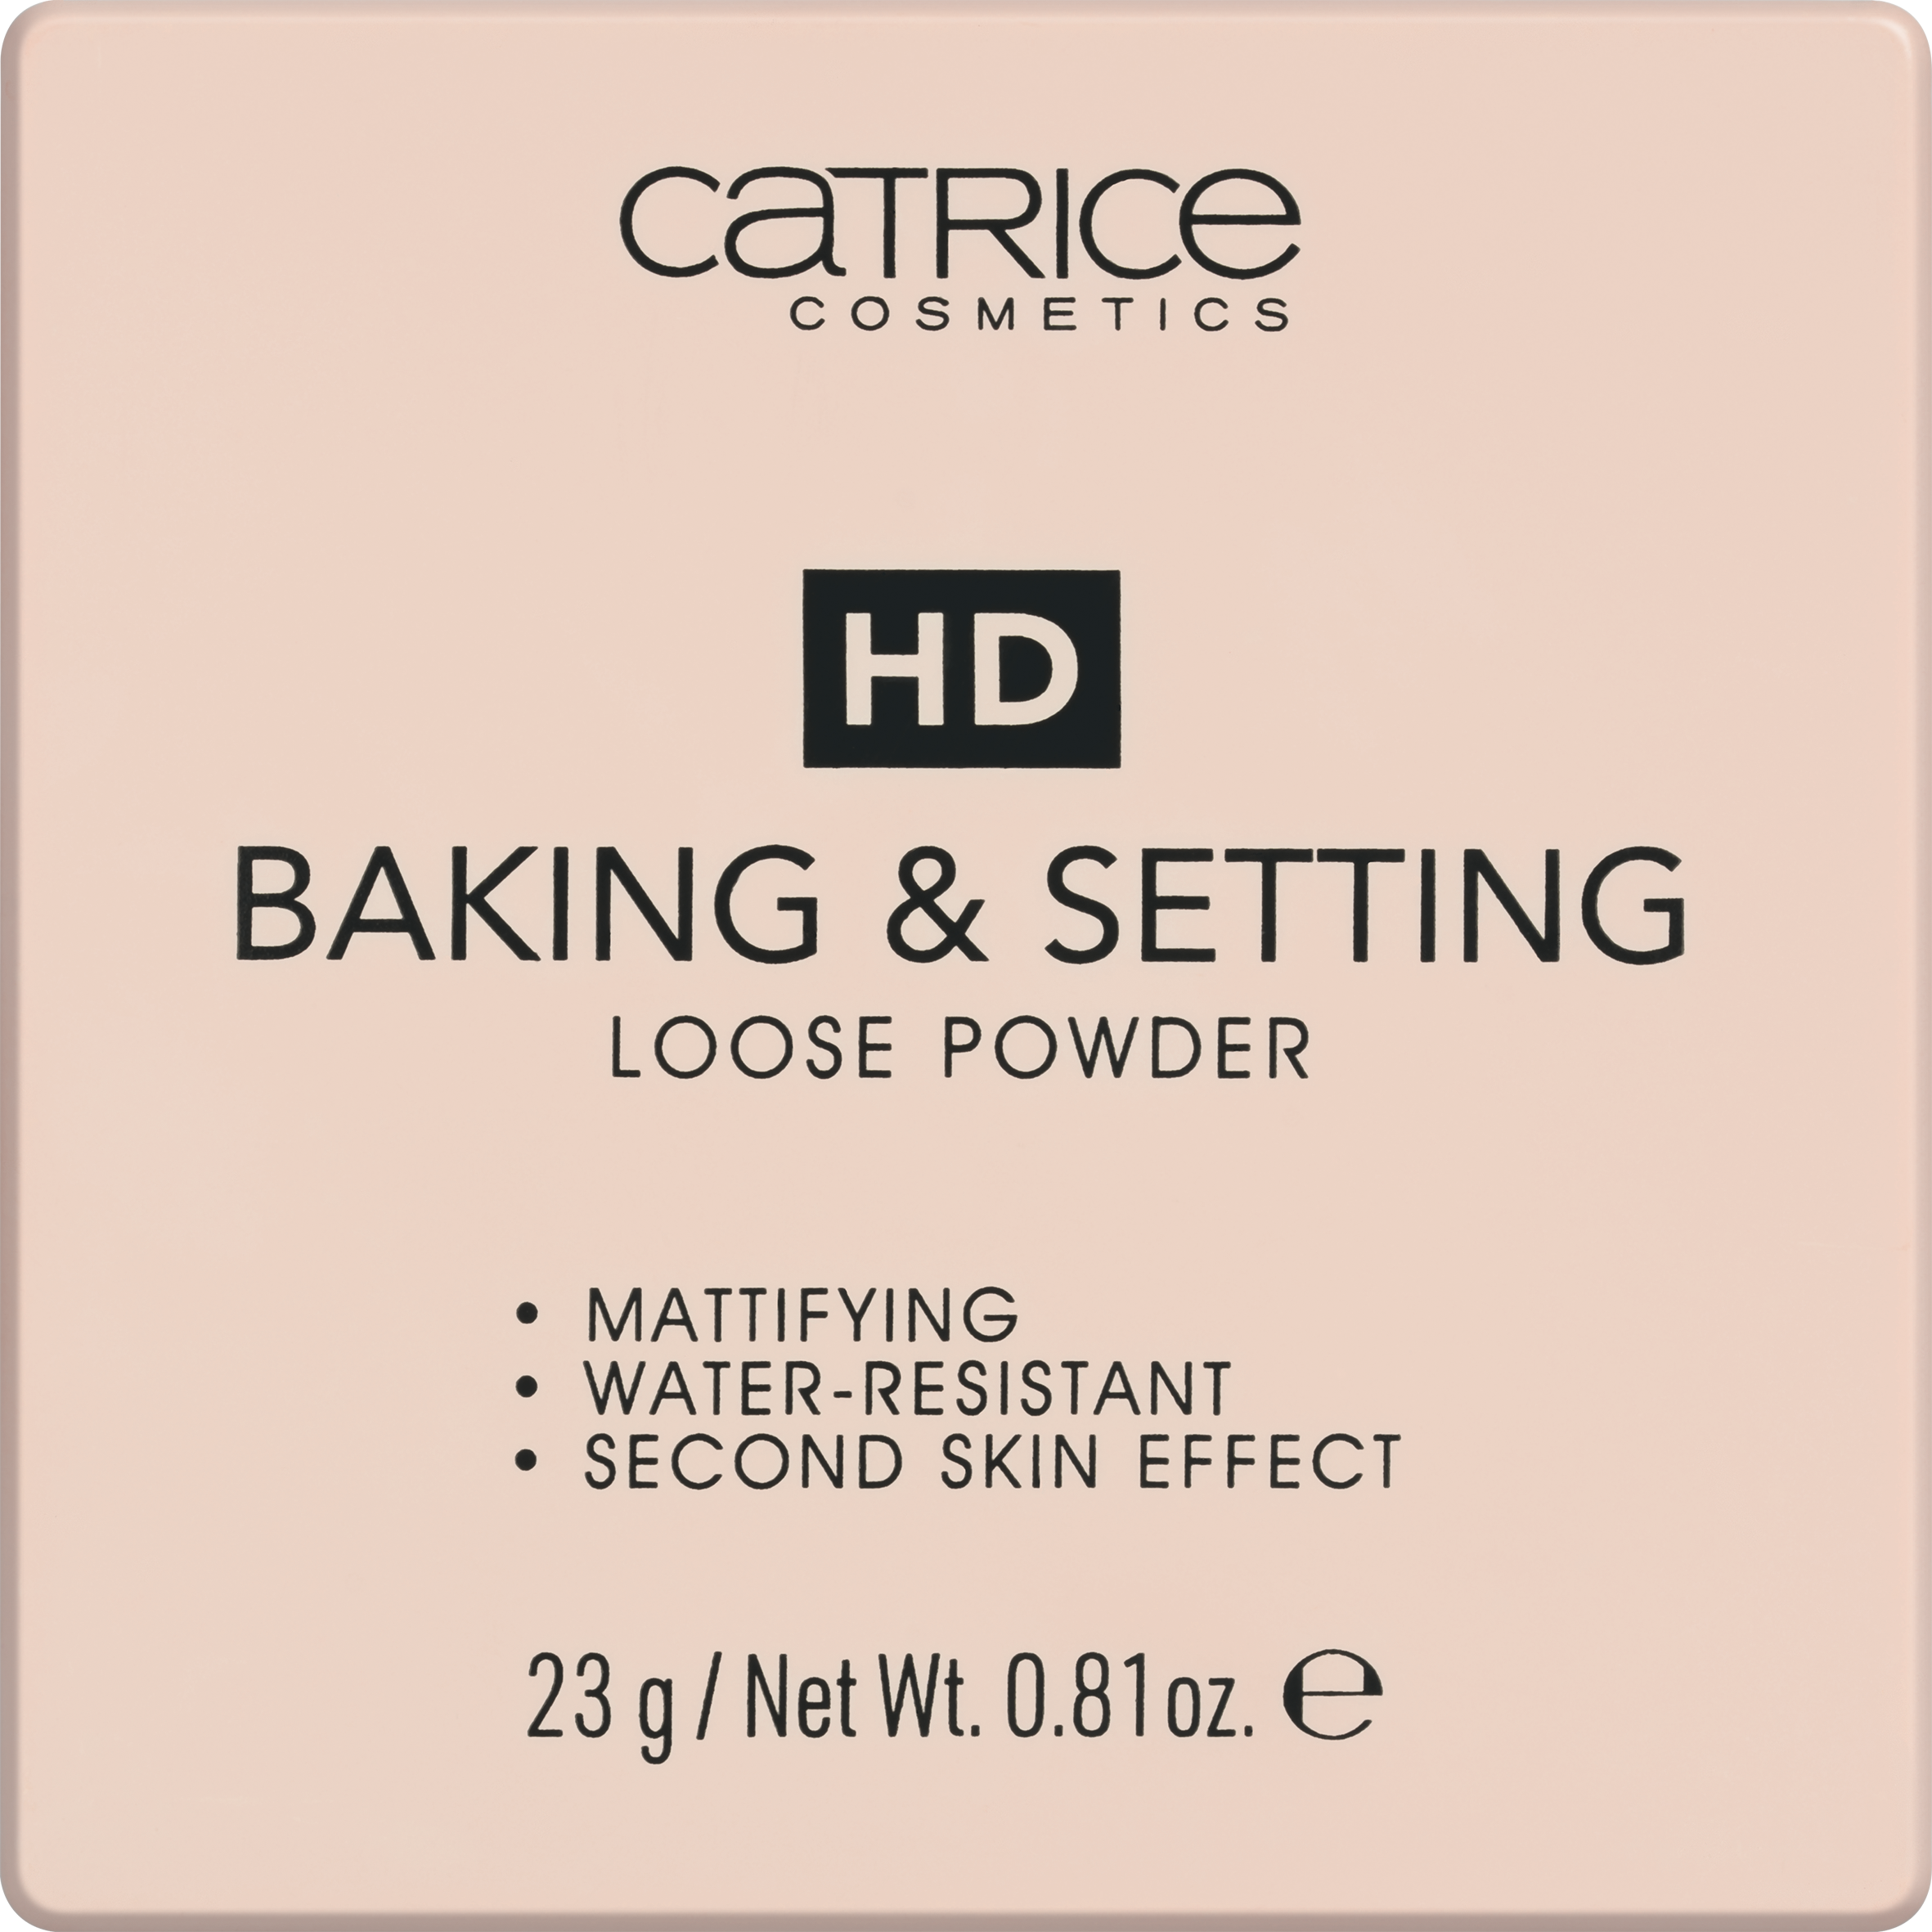 HD Baking & Setting Loose Powder